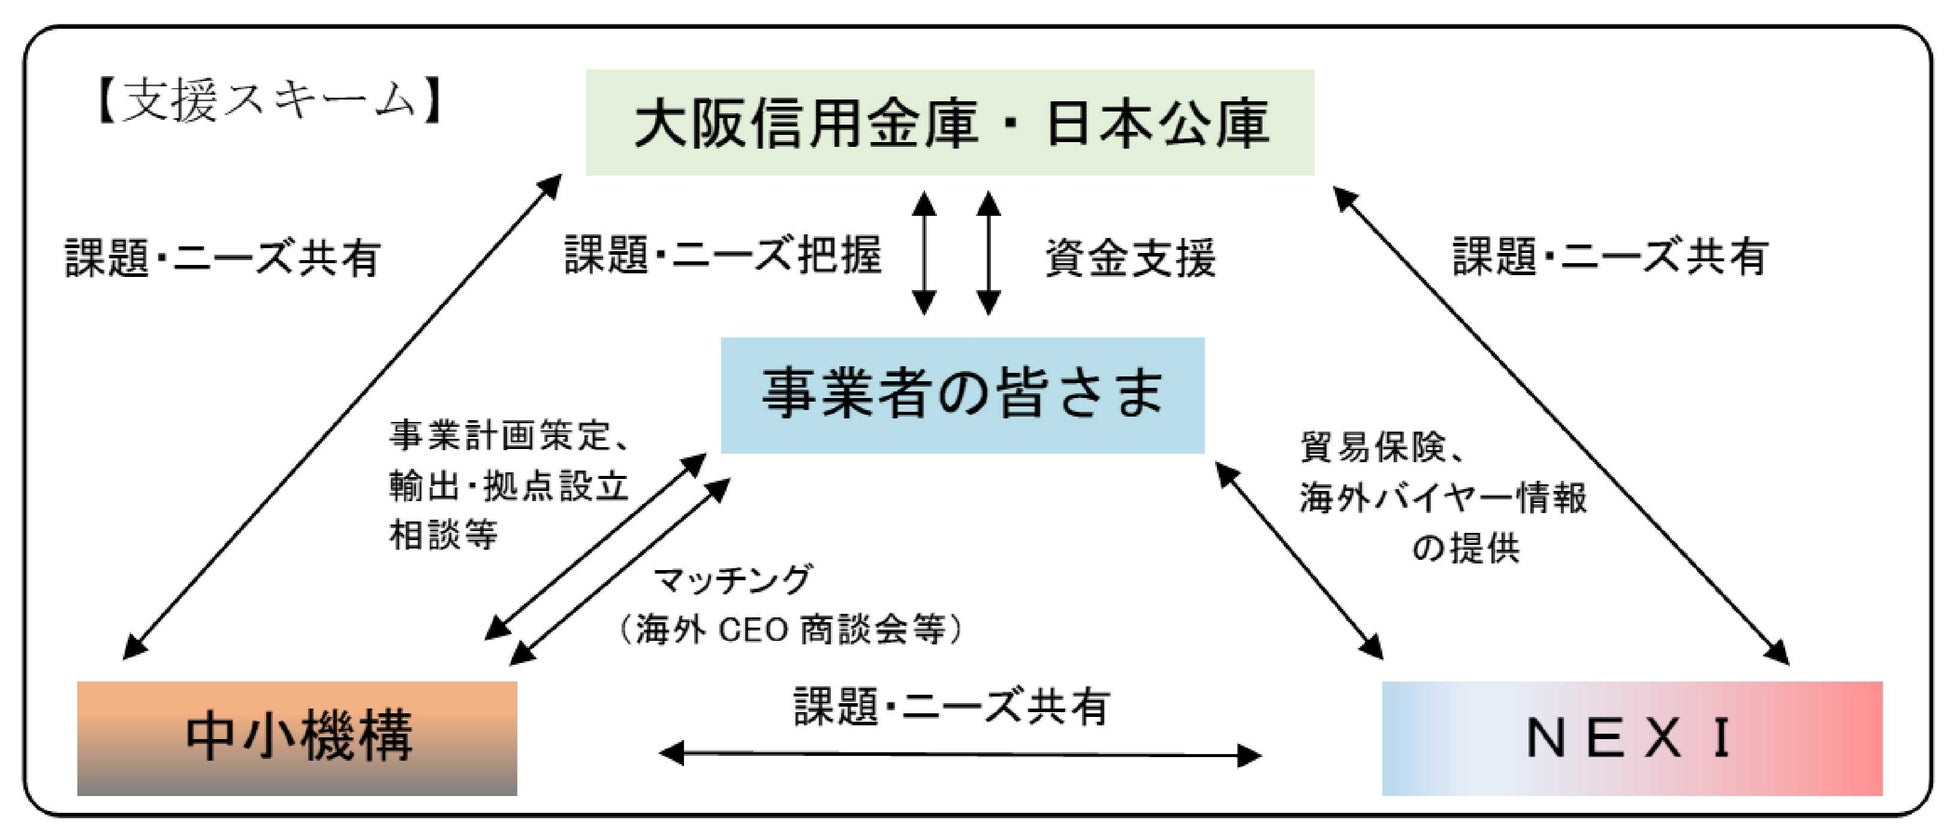 日本政策金融公庫、中小企業基盤整備機構及び日本貿易保険との「海外ビジネス支援パッケージ」による連携開始について